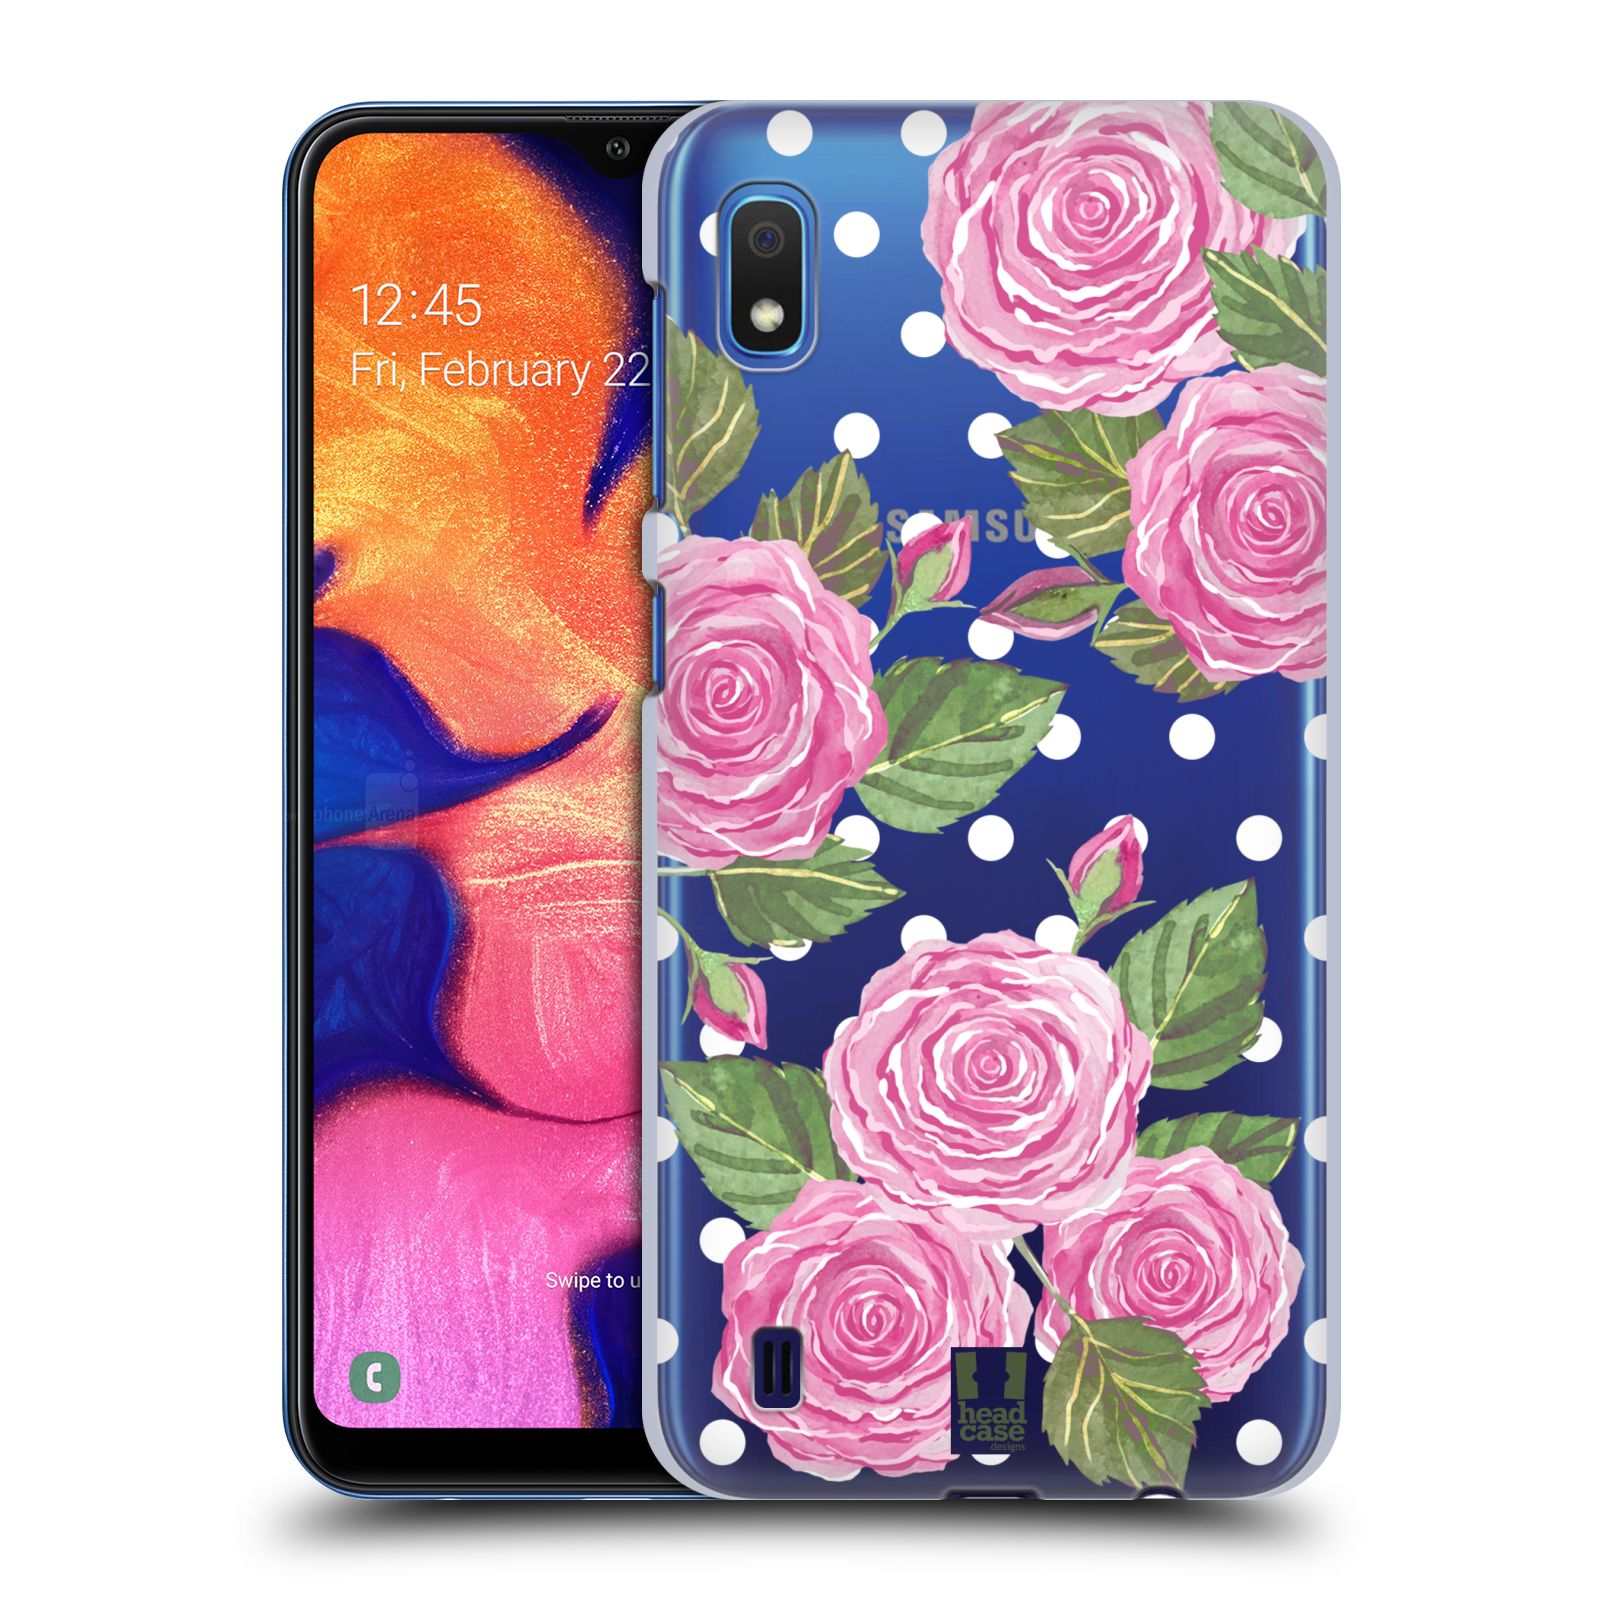 Pouzdro na mobil Samsung Galaxy A10 - HEAD CASE - Anglické růže růžová barva